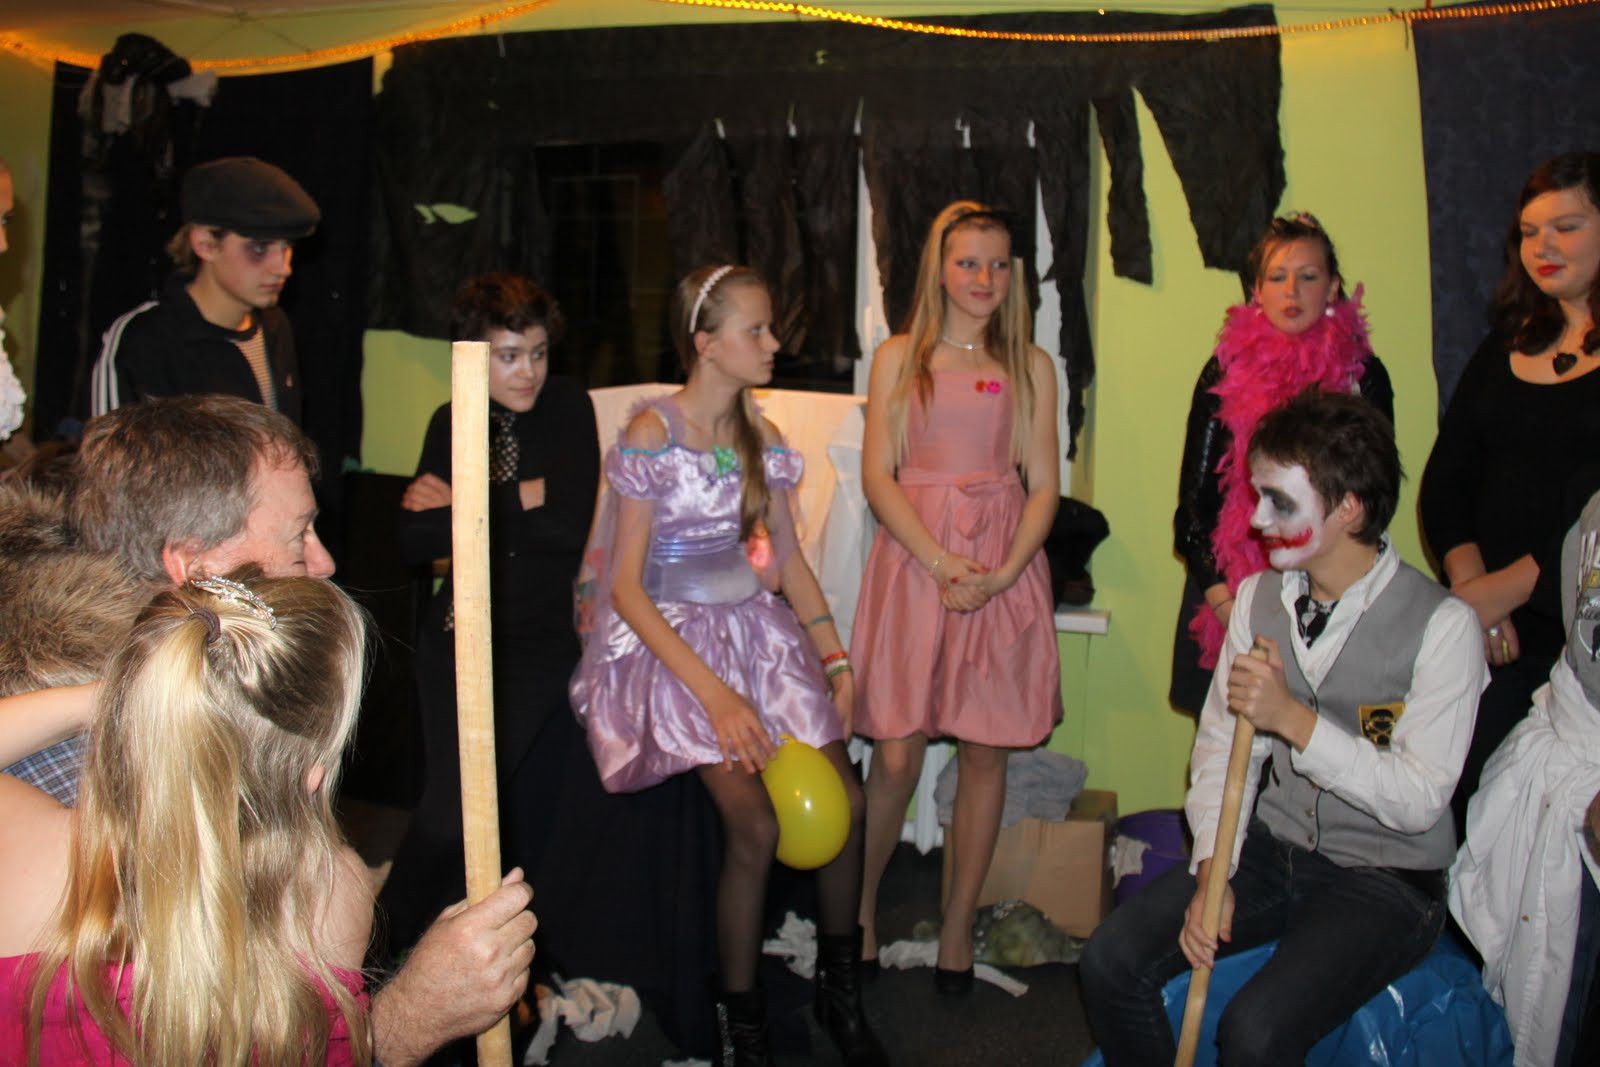 Halloween Party Ideas Teenagers
 Cross Culture Ukraine Teen Halloween Party